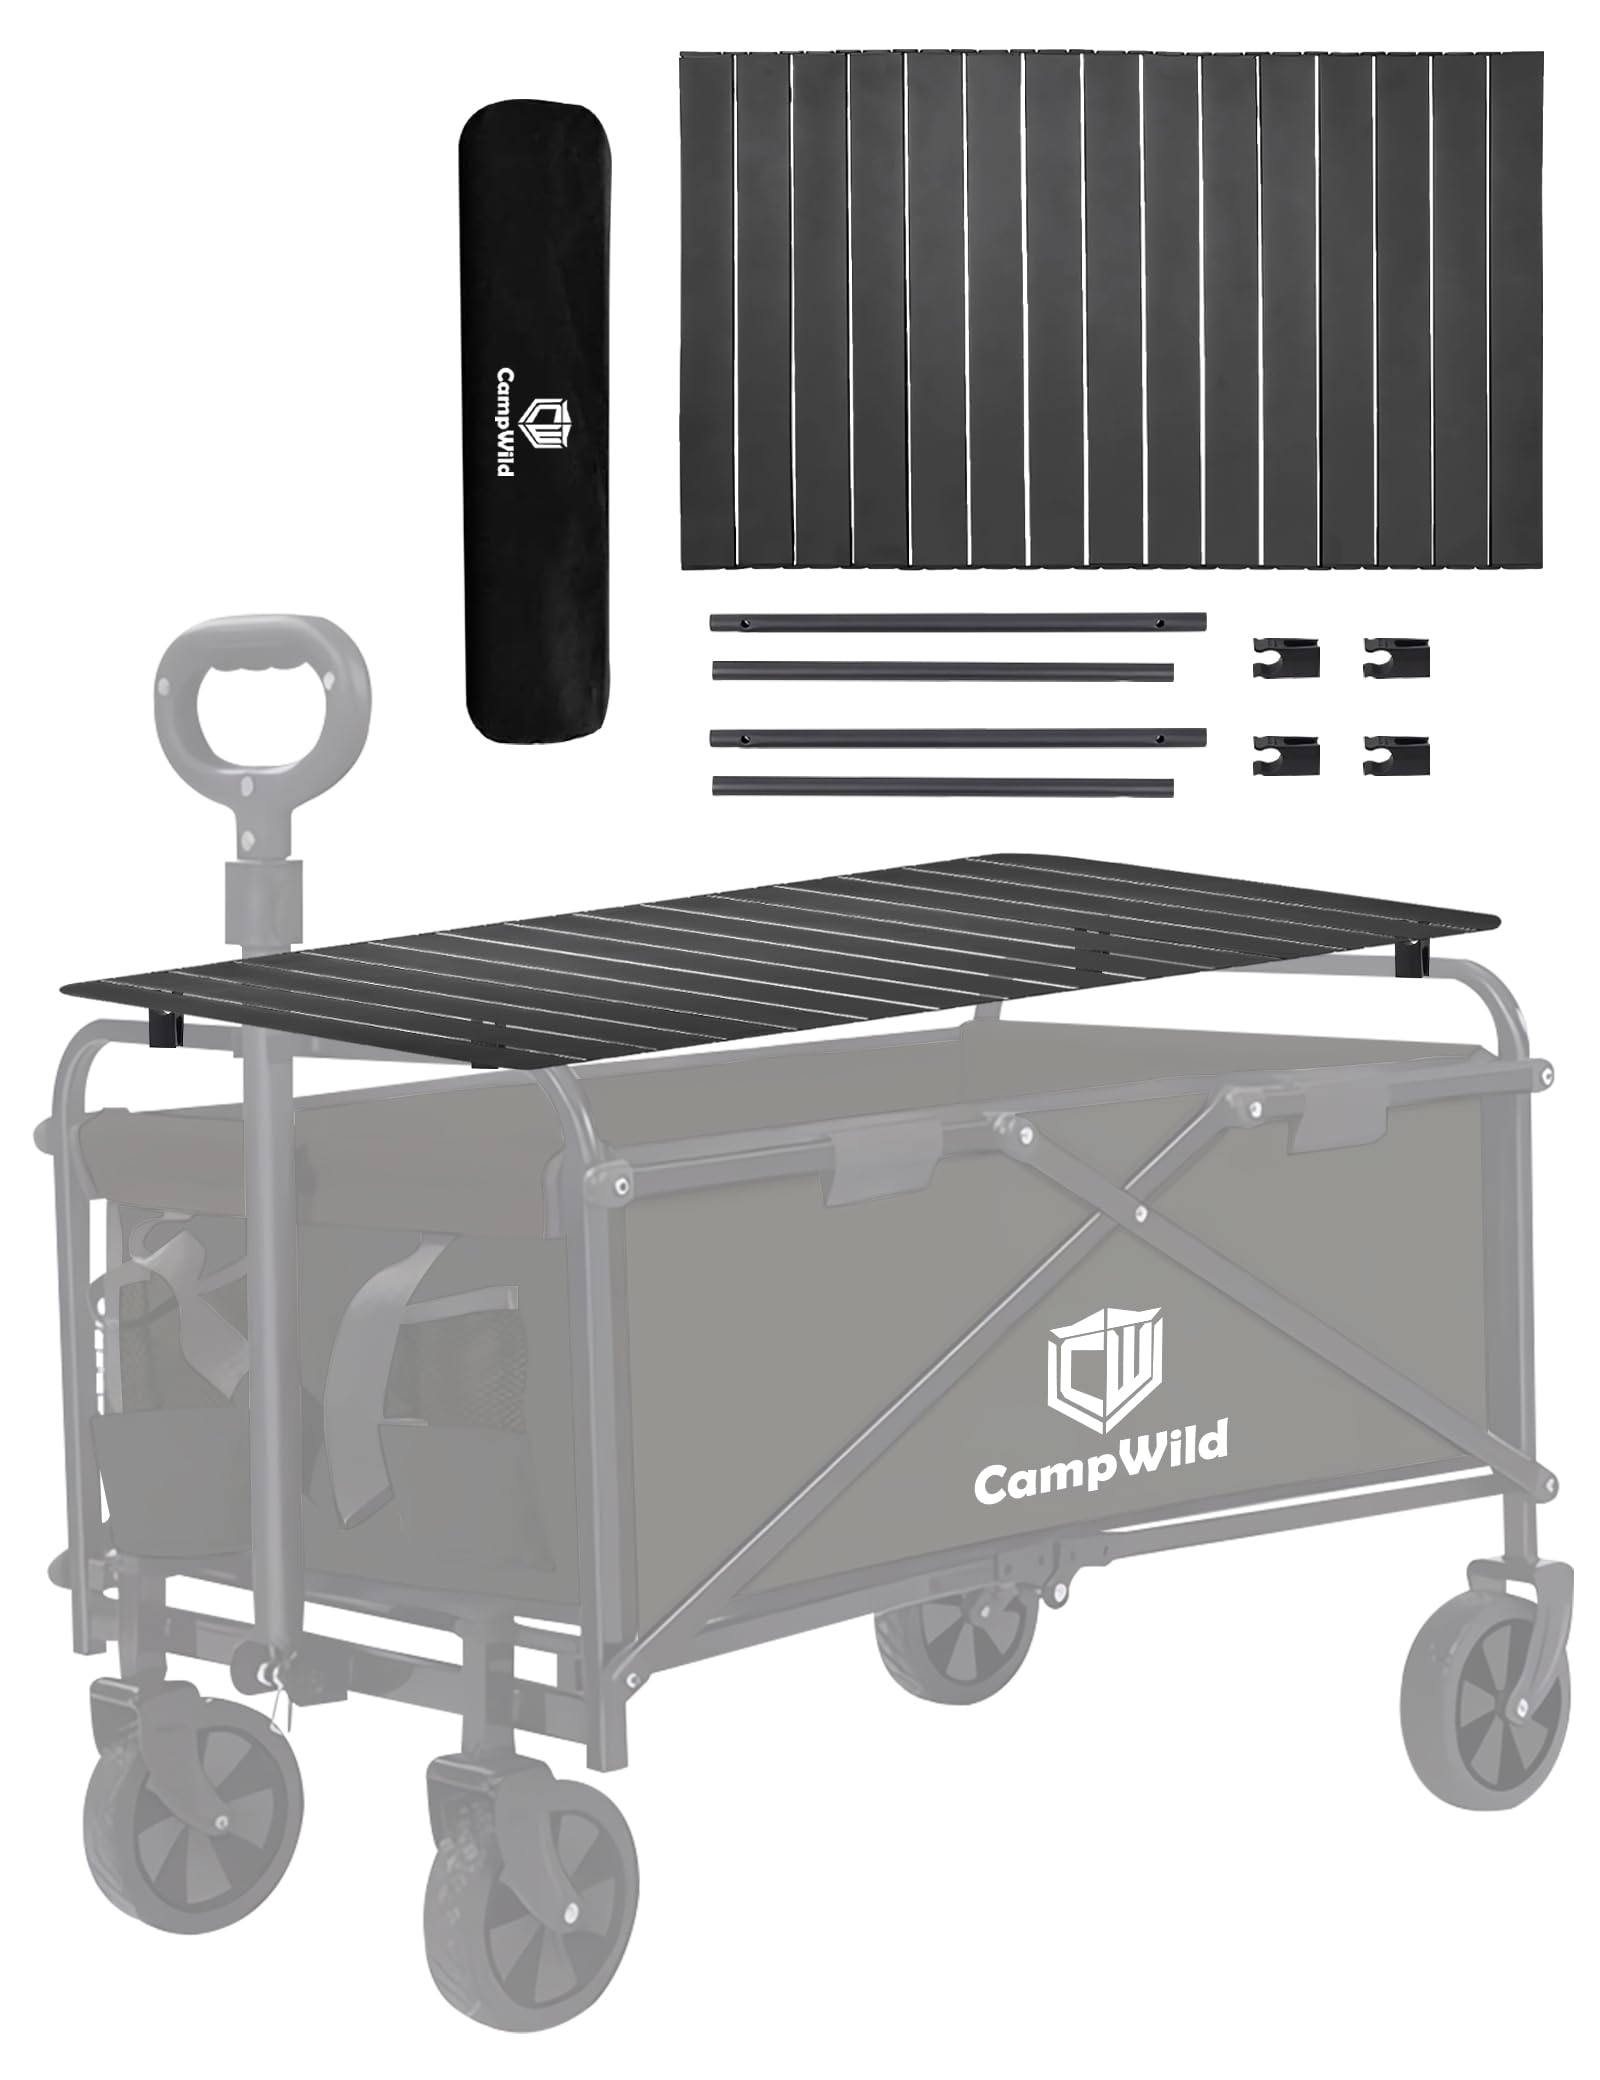 CampWild キャリーワゴン アウトドアワゴンアウトドア専用テーブル 耐重50 KG、軽量、収納袋付き、アウトドアキャンプに適している (小きい)